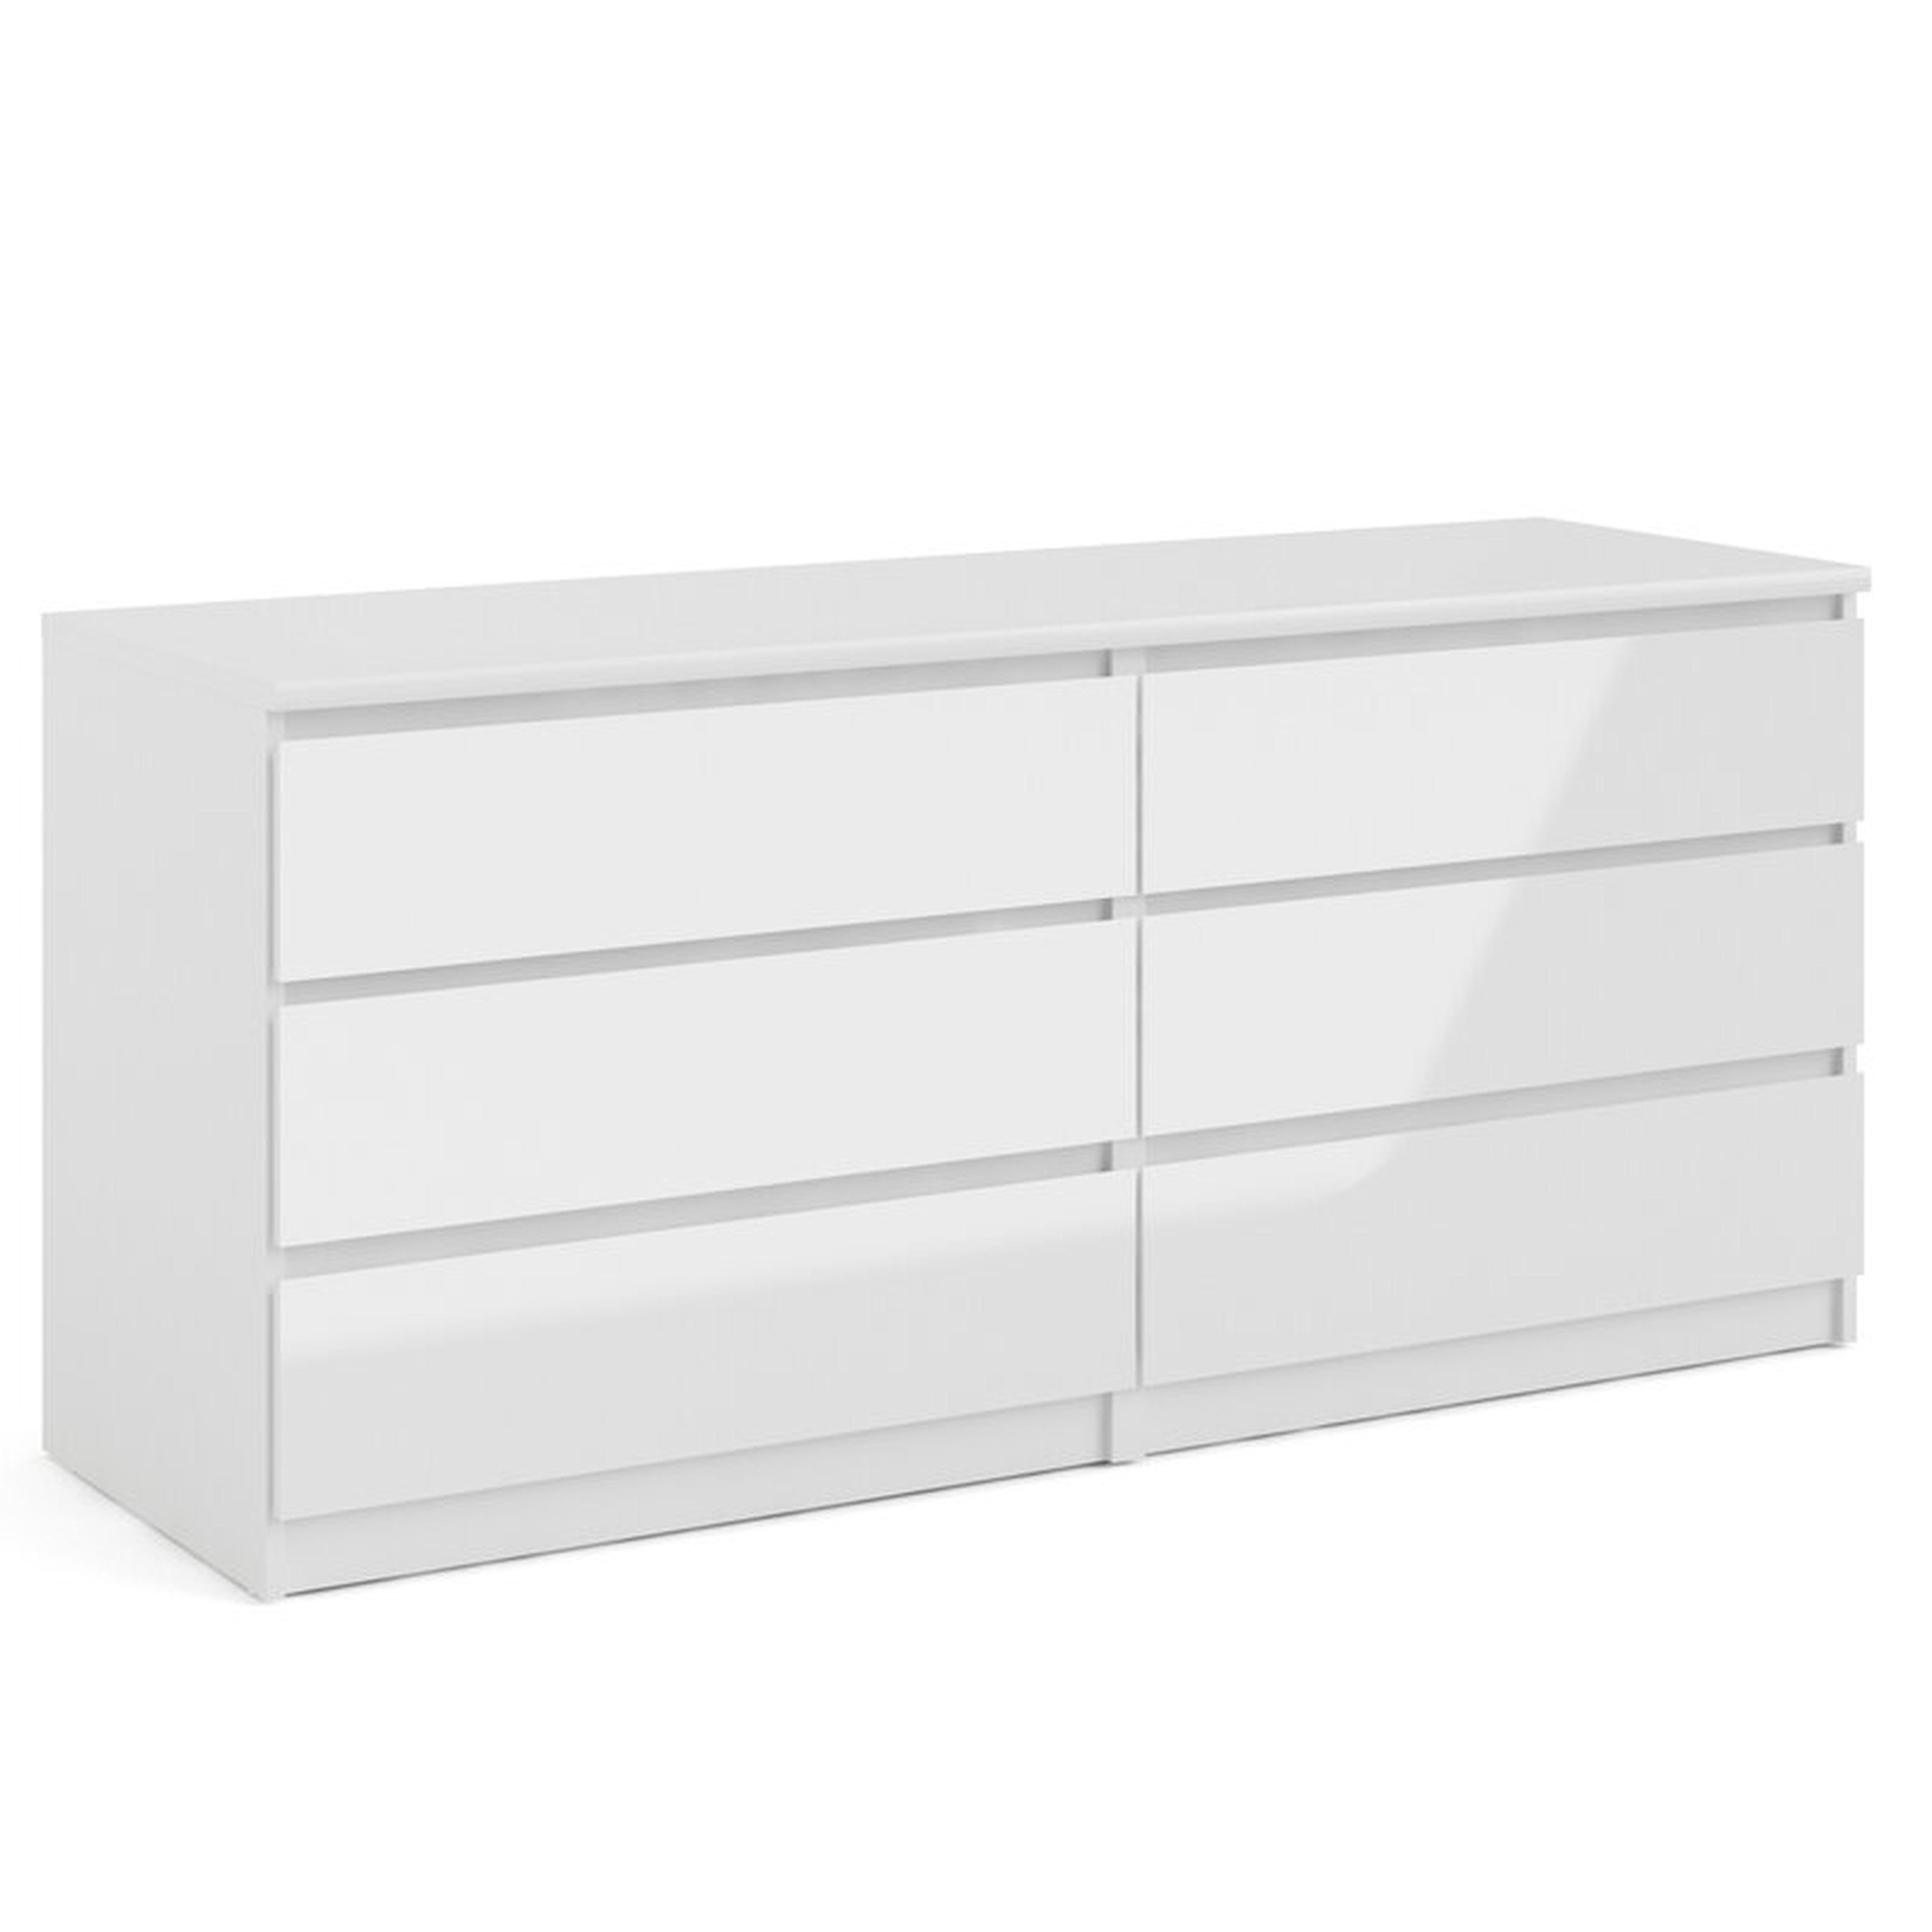 Kepner 6 Drawer Double Dresser / White - Wayfair